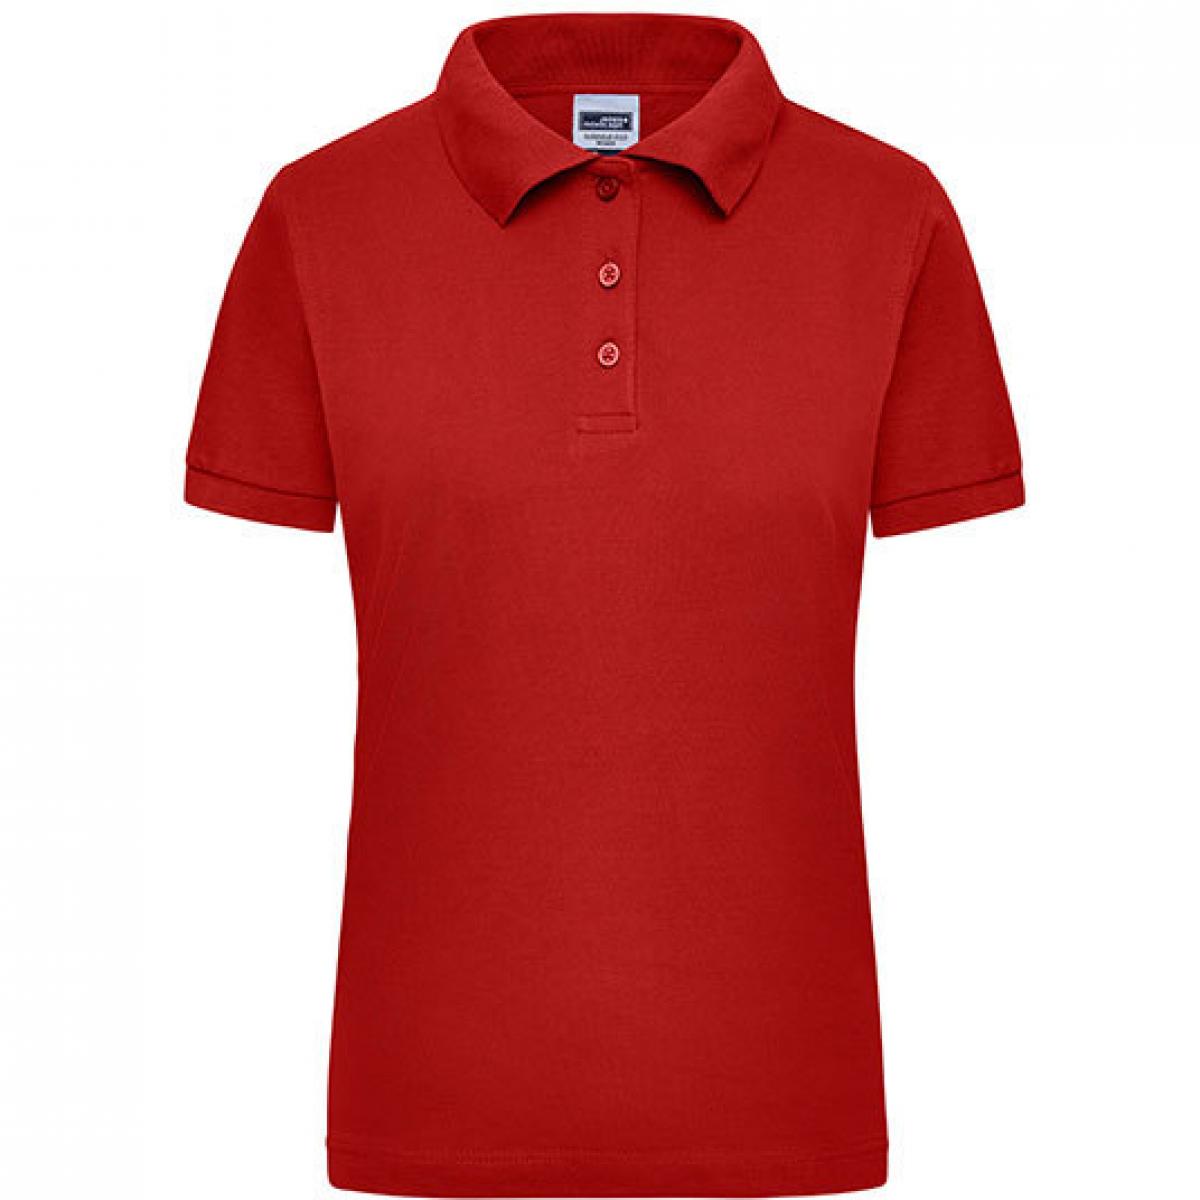 Hersteller: James+Nicholson Herstellernummer: JN 803 Artikelbezeichnung: Damen Workwear Polo / Trocknergeeignet Farbe: Red